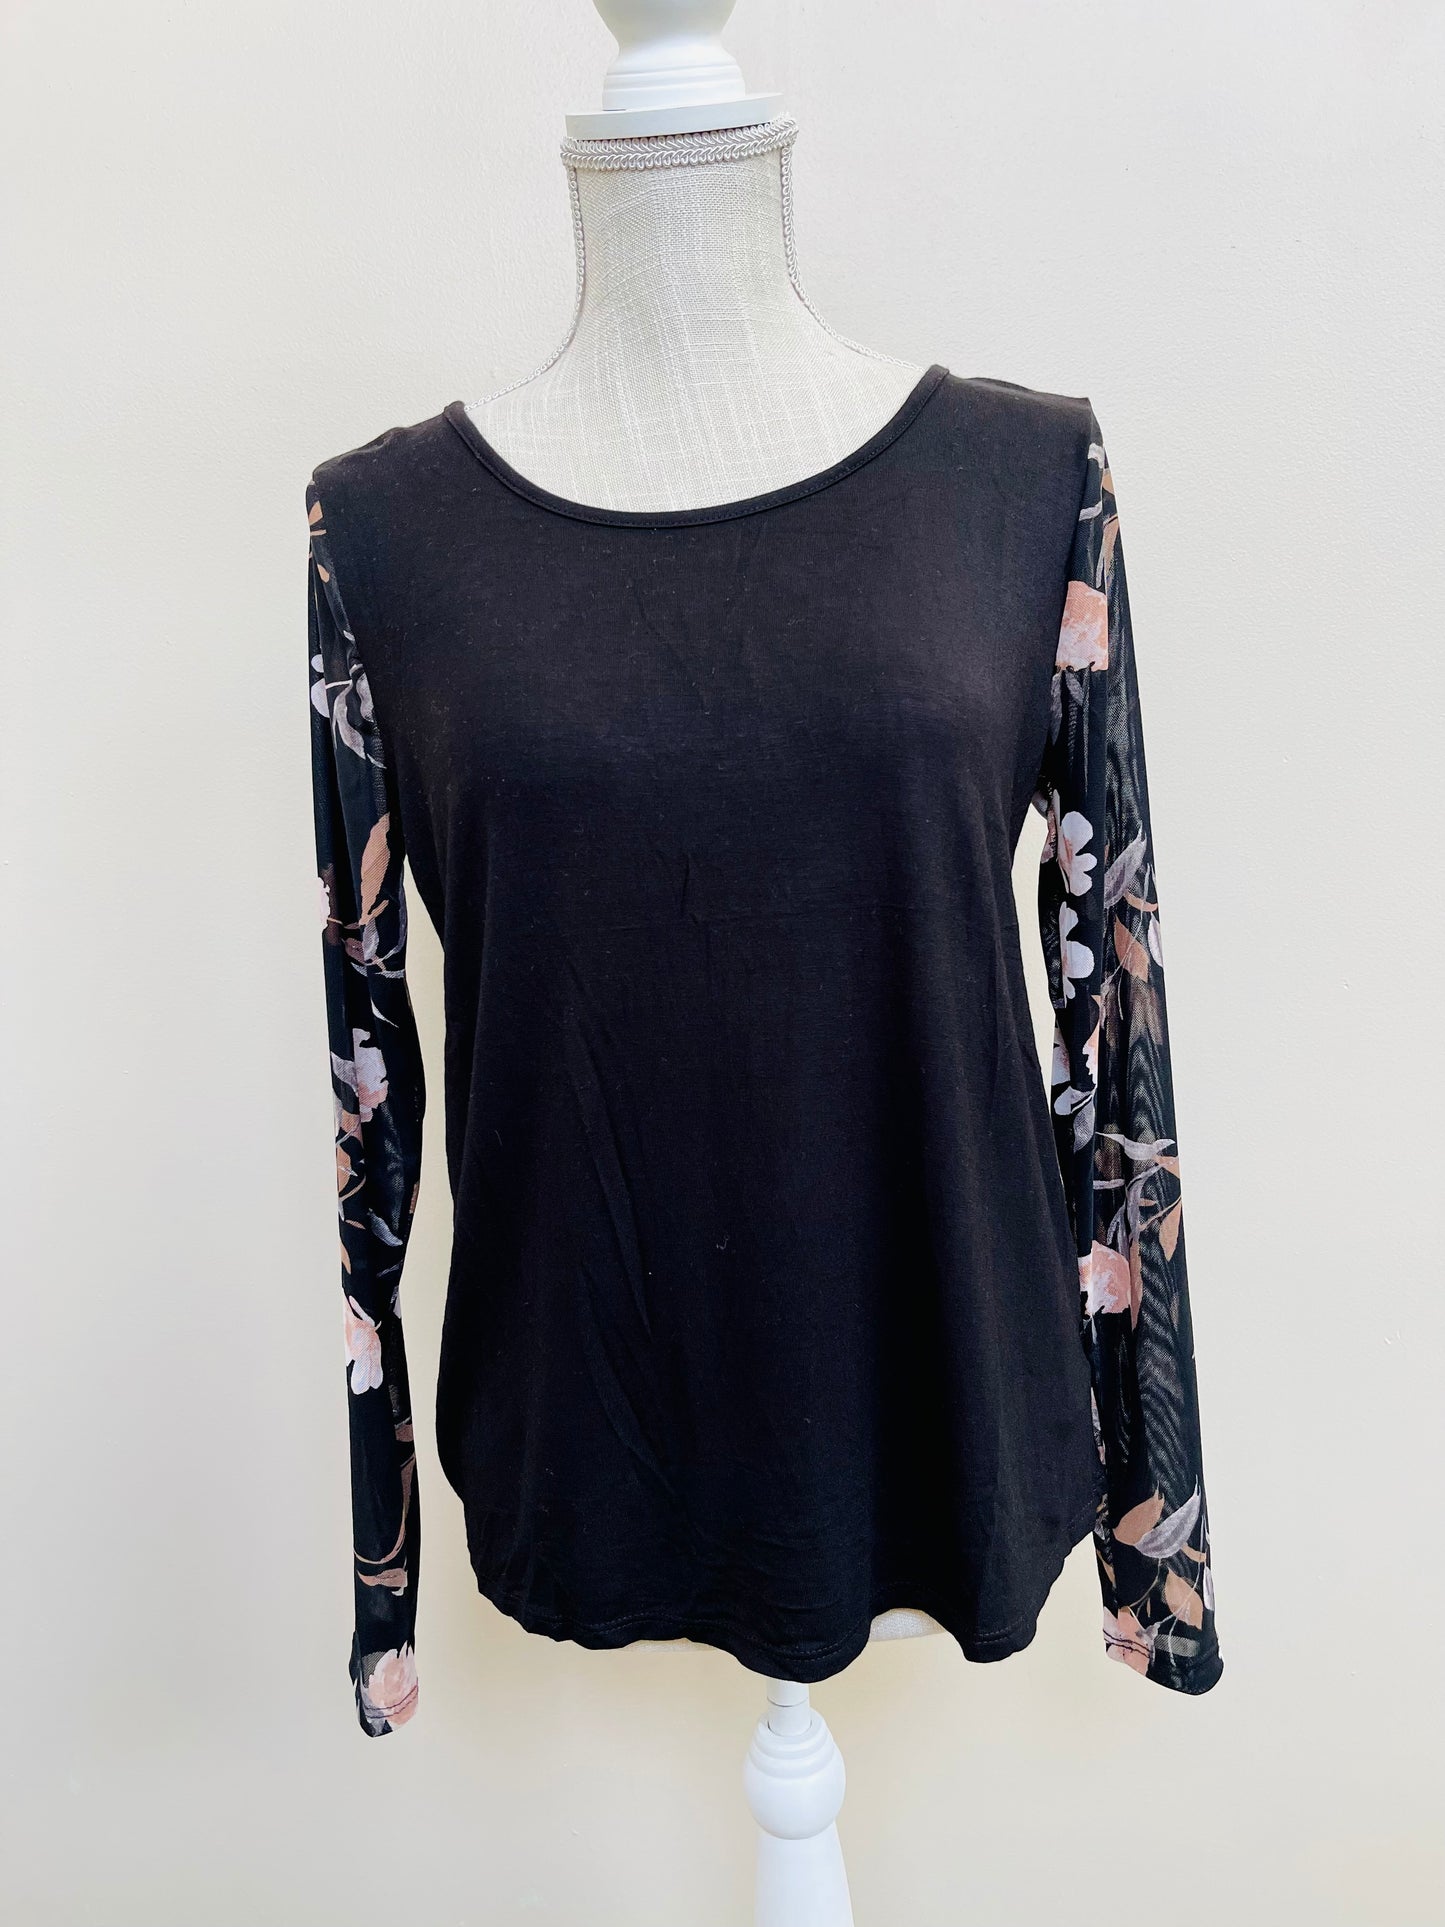 Luxe Black Top w/Sheer Floral Sleeves